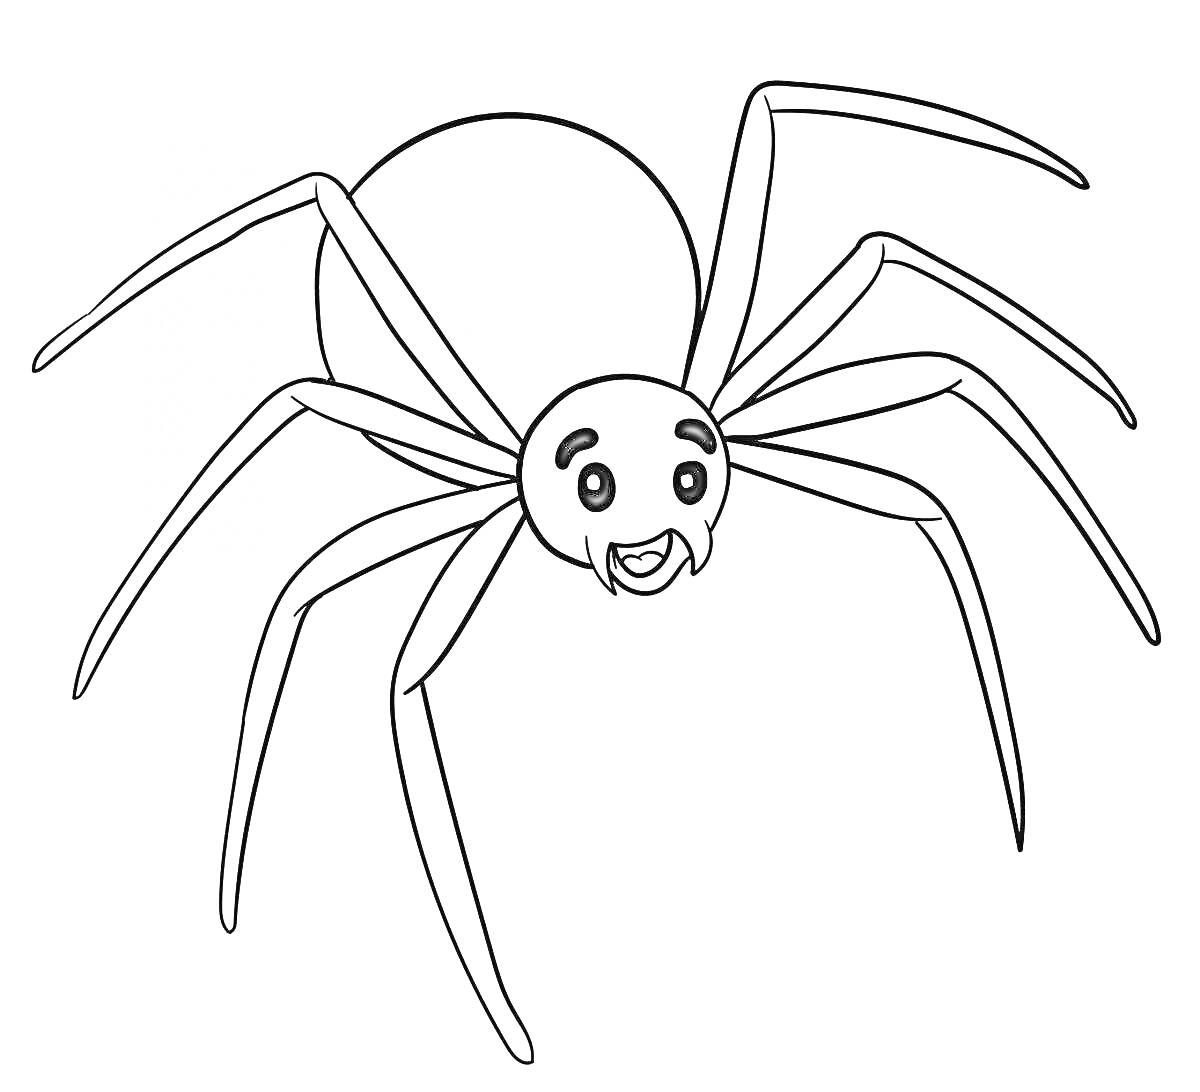 Раскраска Весёлый паук с широкой улыбкой и восемью ногами